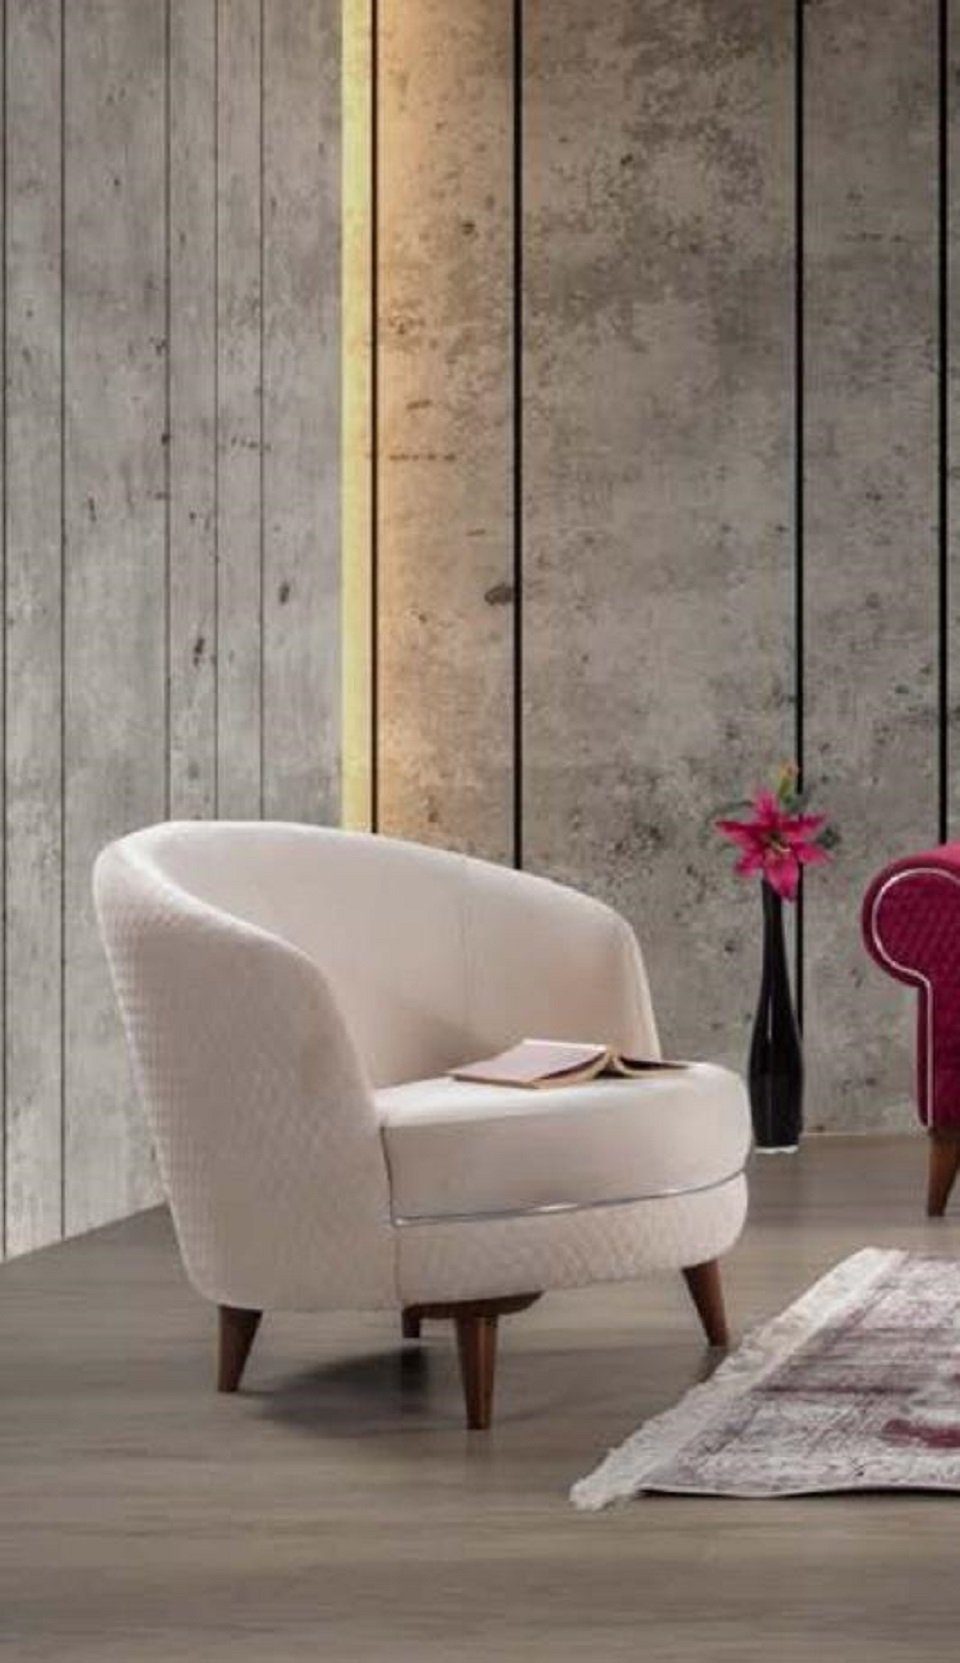 JVmoebel Sessel Einsitzer Sessel Couch Textil Wohnzimmer Polster Möbel Weiß Textil Neu